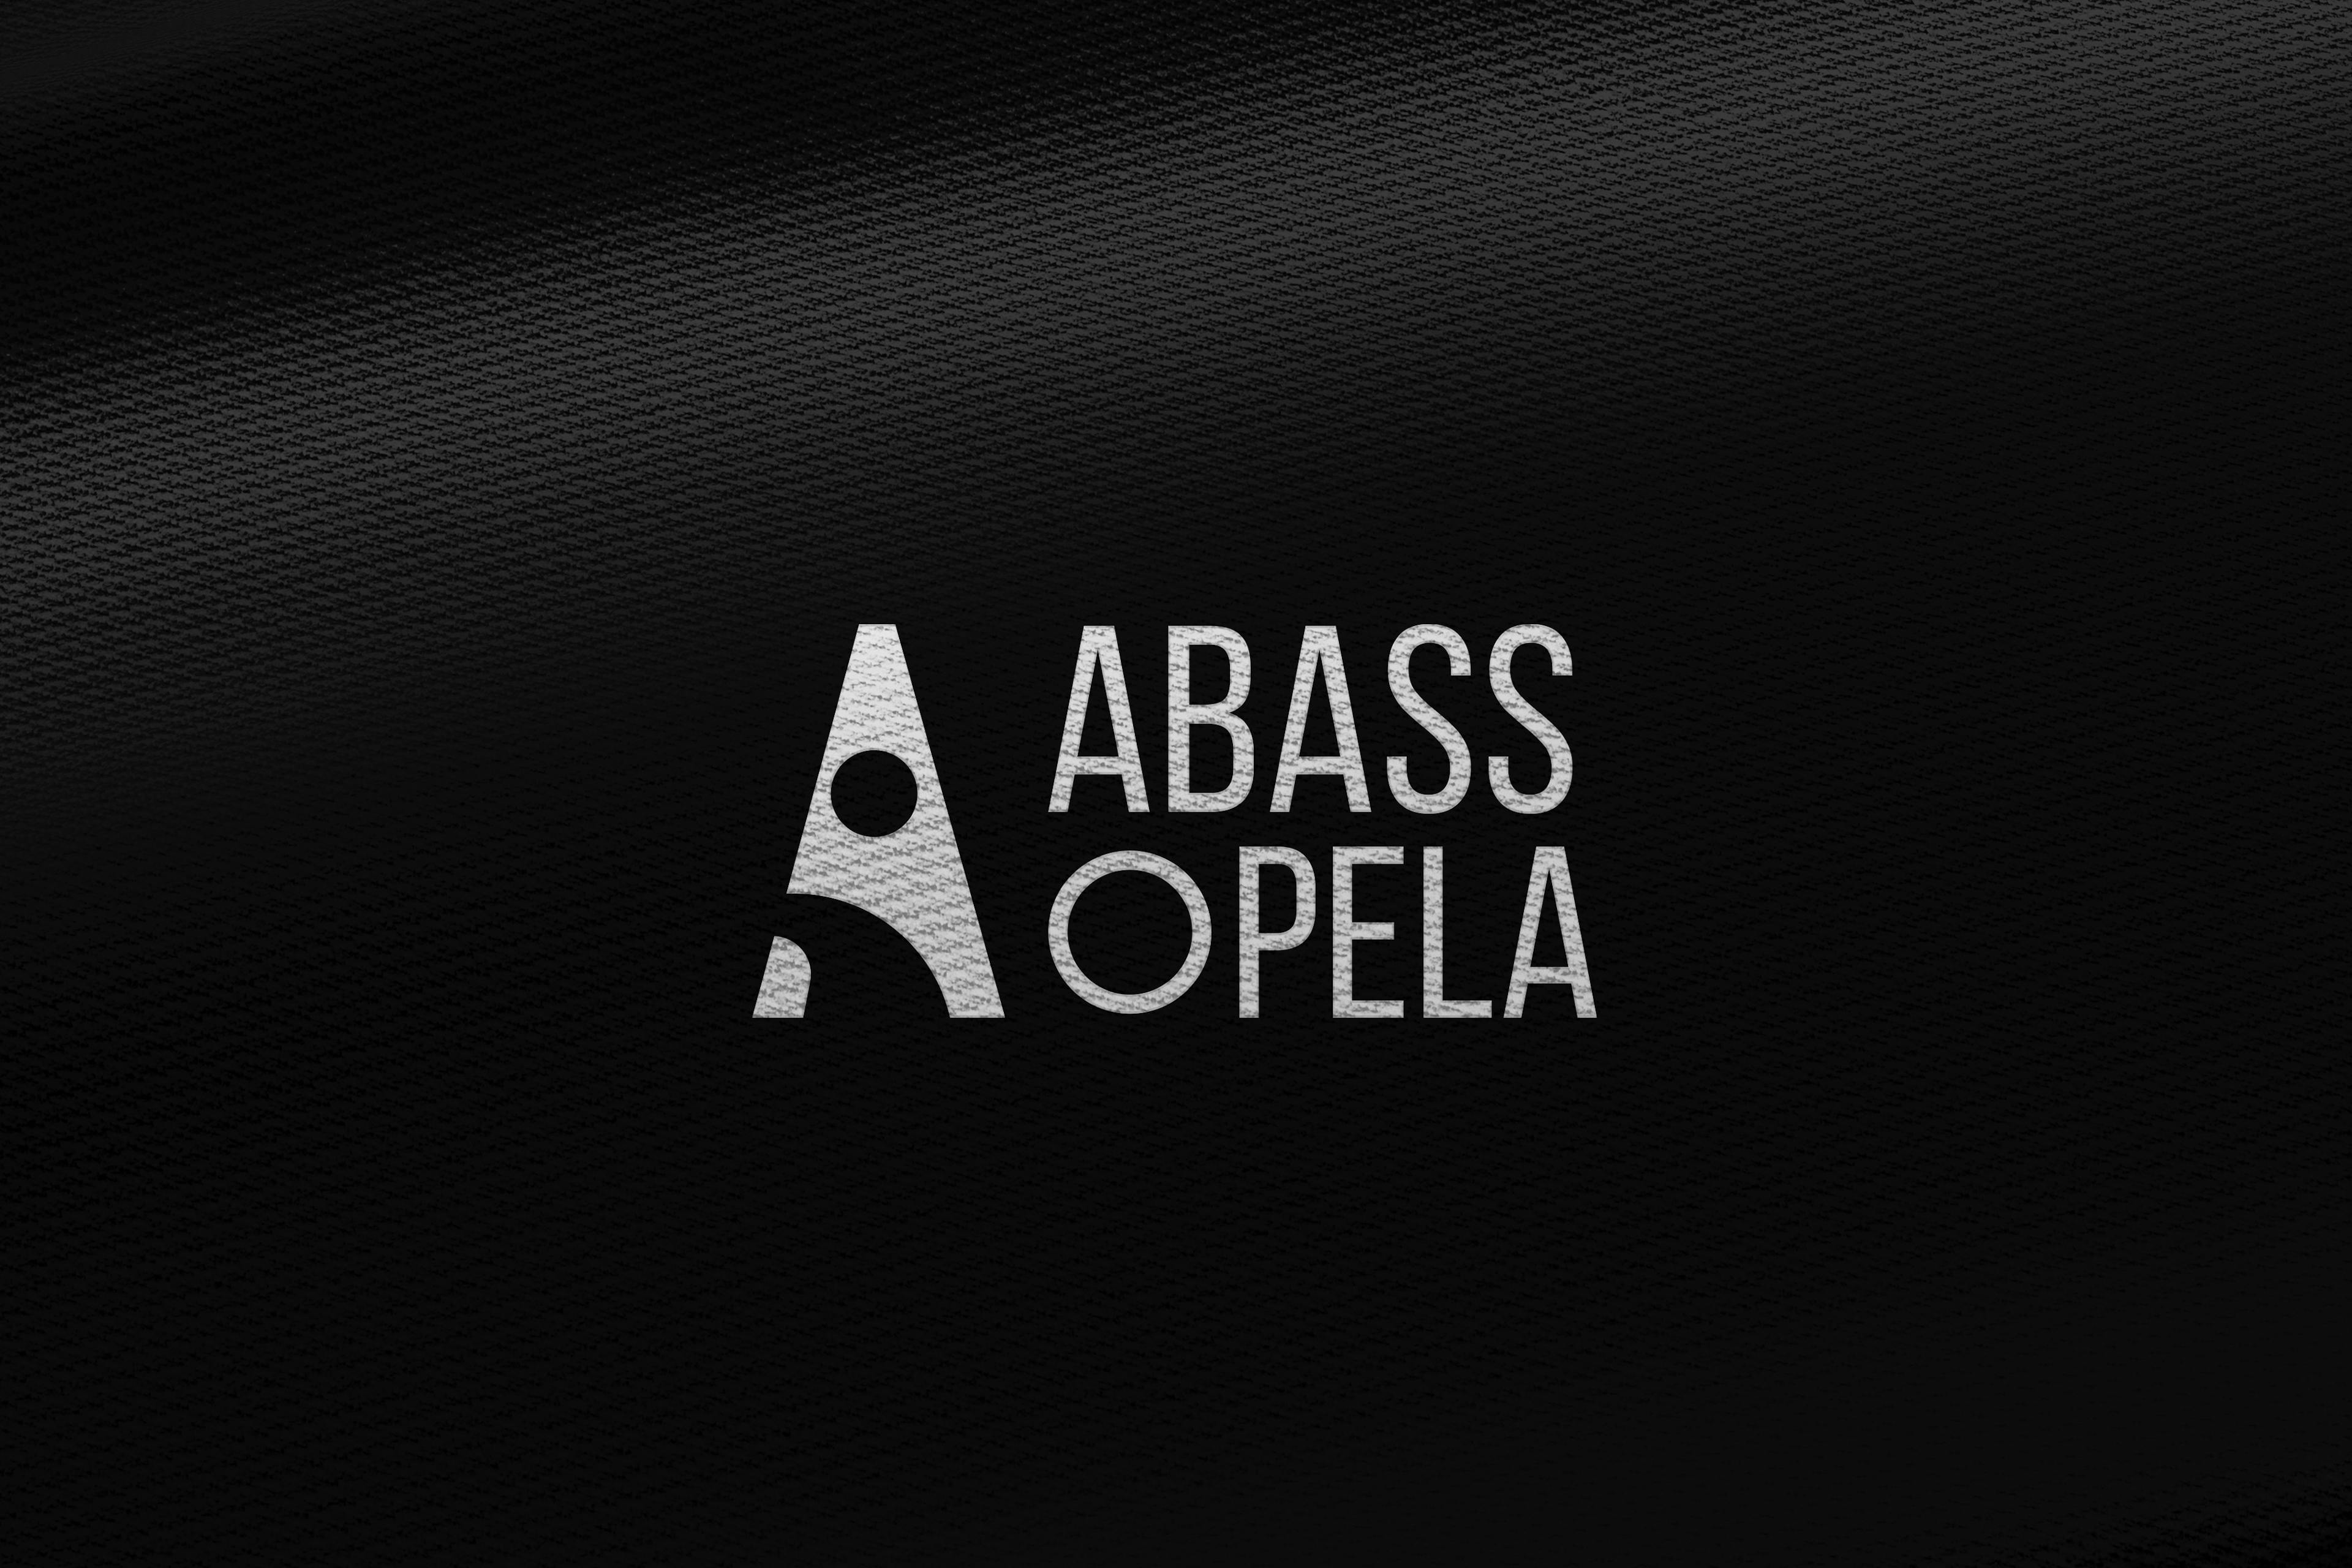 Abass Opela